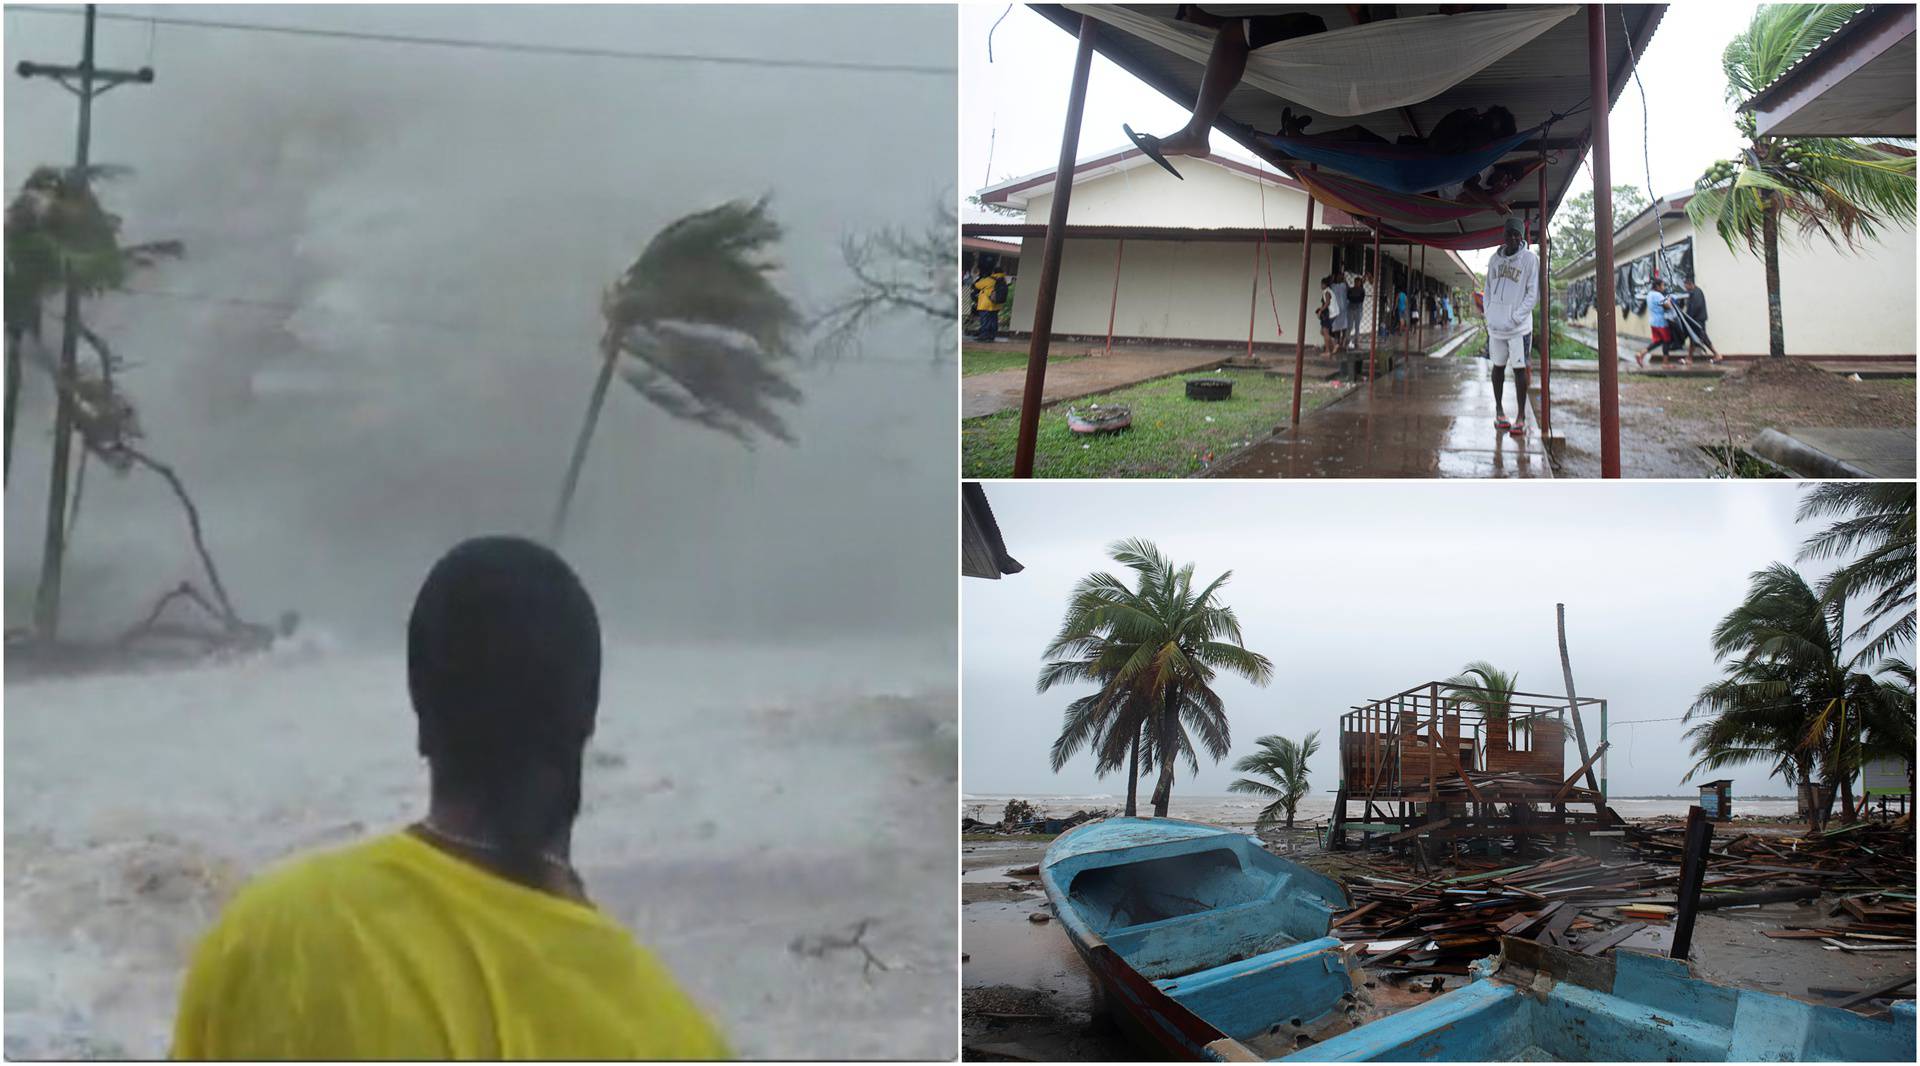 Uragan lota 'mete' Nikaragvu: Udari vjetra i do 260 km na sat!